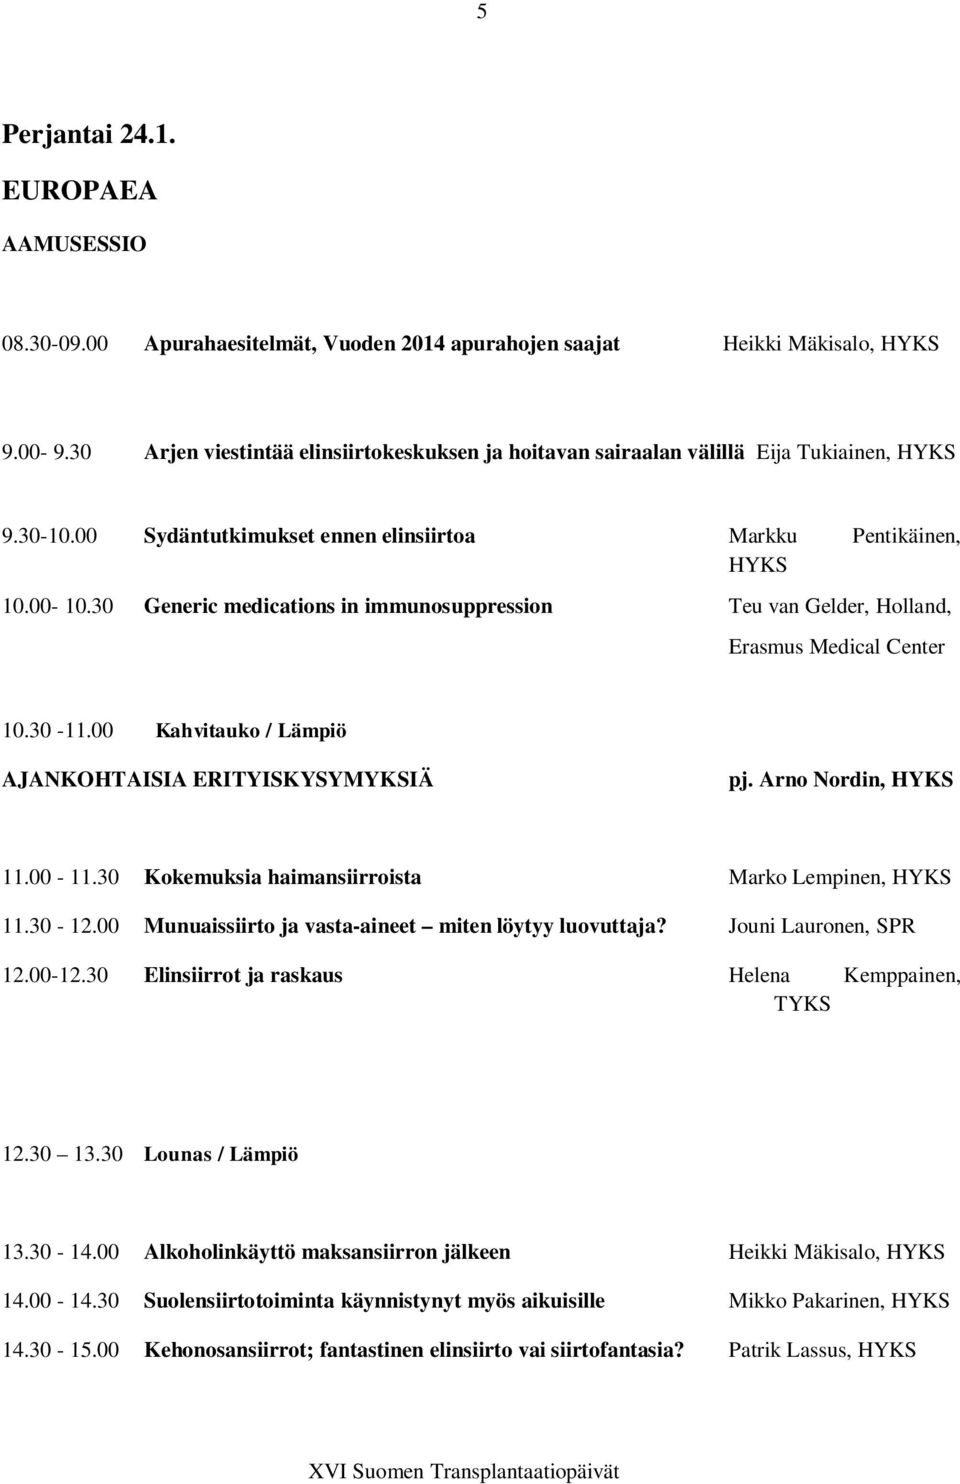 30 Generic medications in immunosuppression Teu van Gelder, Holland, Erasmus Medical Center 10.30-11.00 Kahvitauko / Lämpiö AJANKOHTAISIA ERITYISKYSYMYKSIÄ pj. Arno Nordin, HYKS 11.00-11.